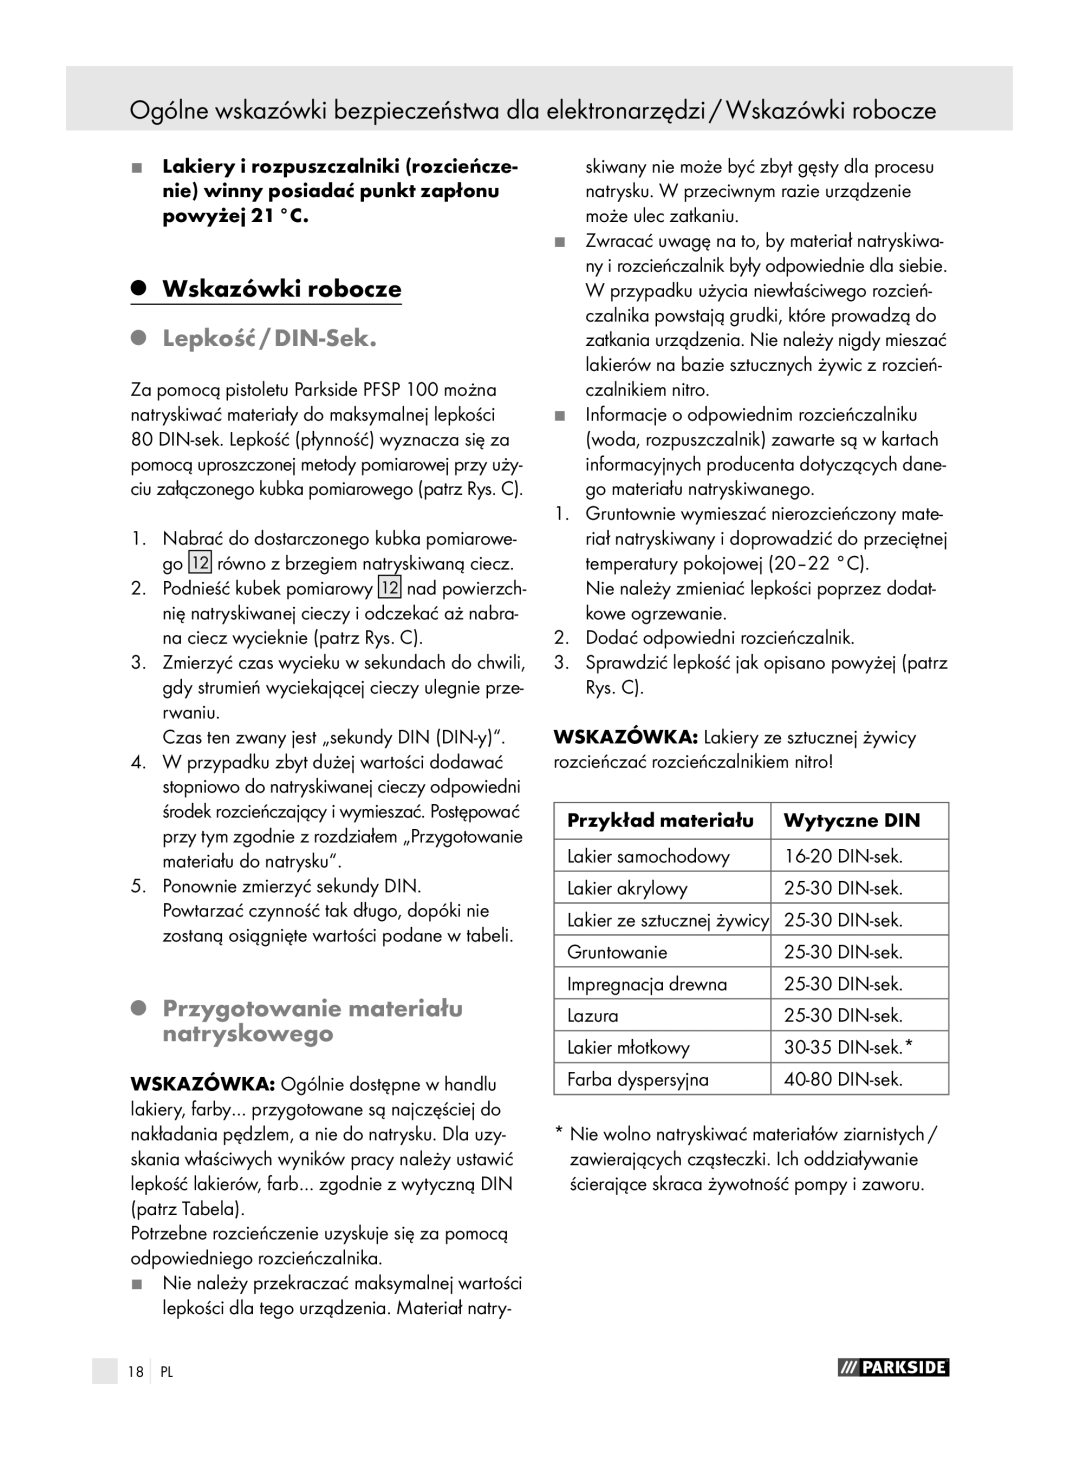 Parkside PFSP 100 manual Lepkość / DIN-Sek, Przygotowanie materiału natryskowego 